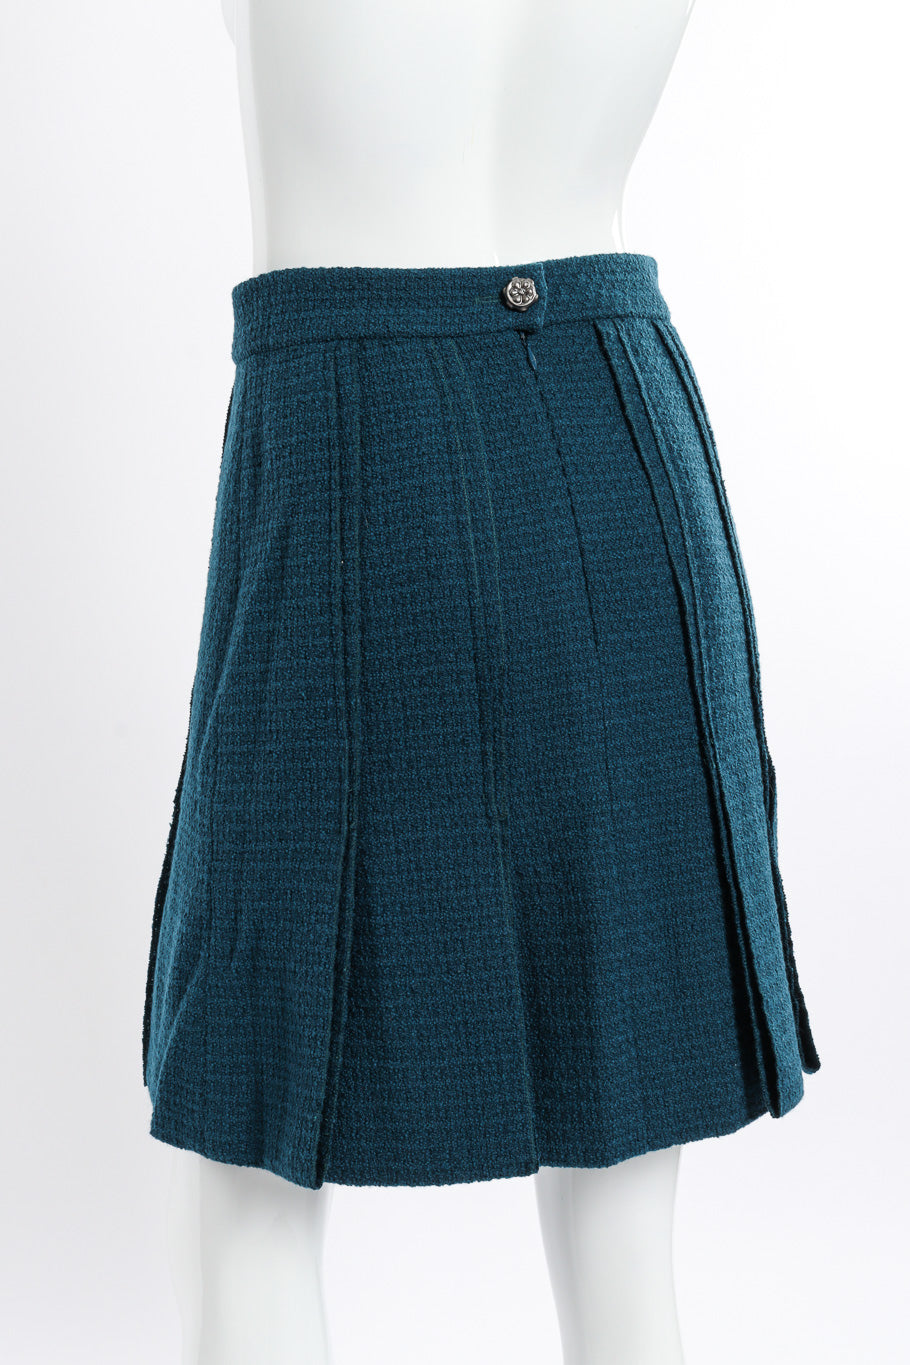 2008A Wool Carwash Hem Jacket & Skirt Set back view of skirt on mannequin @Recessla